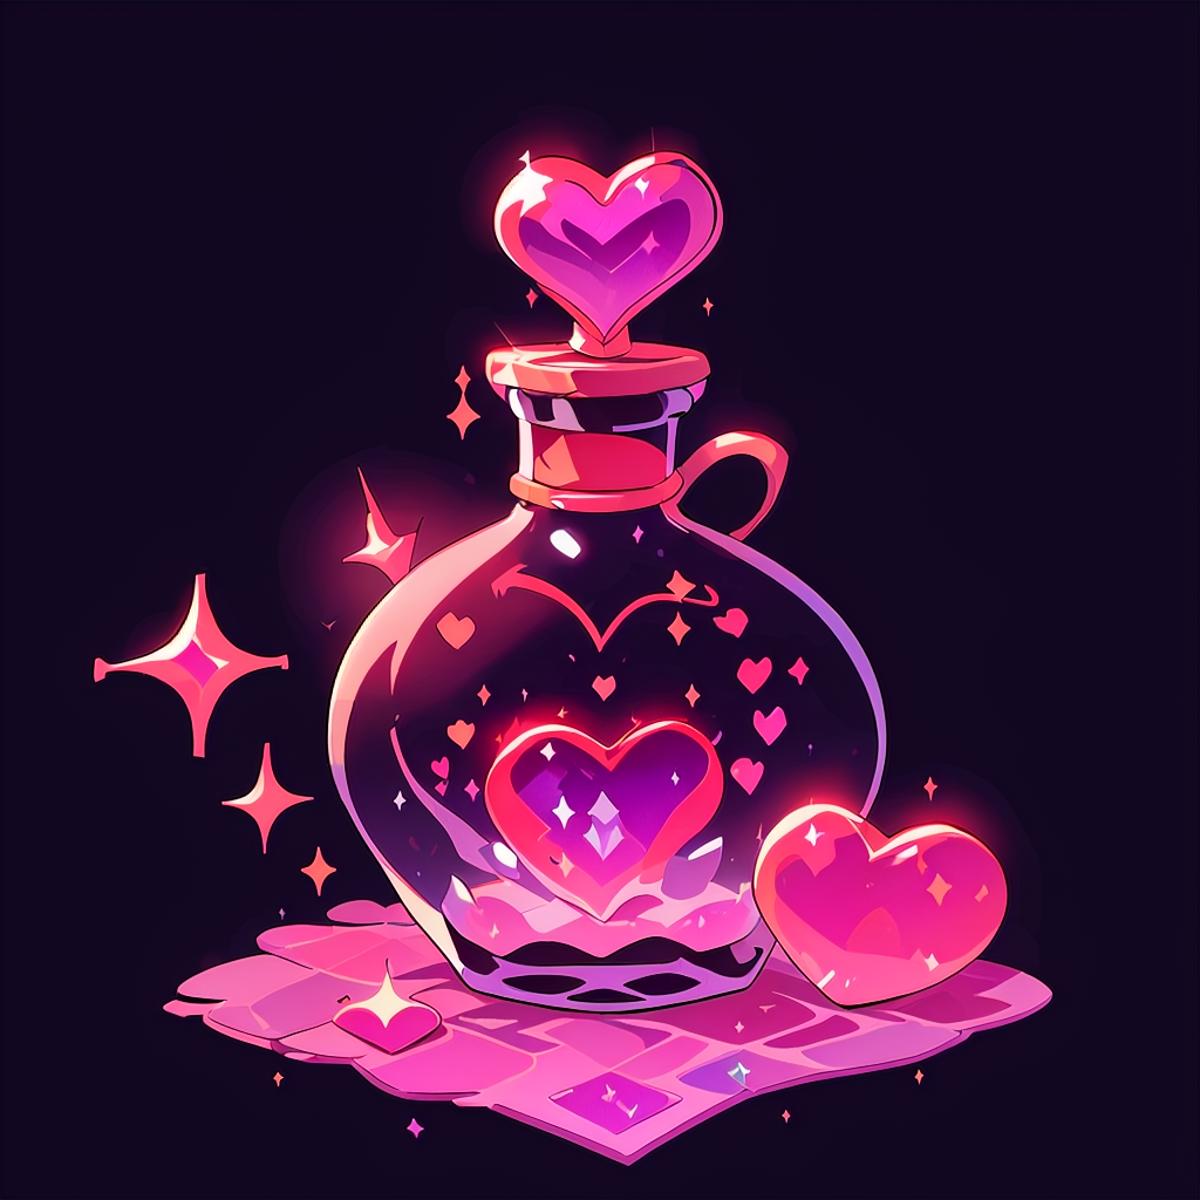 Magic bottle image by missfidonyo